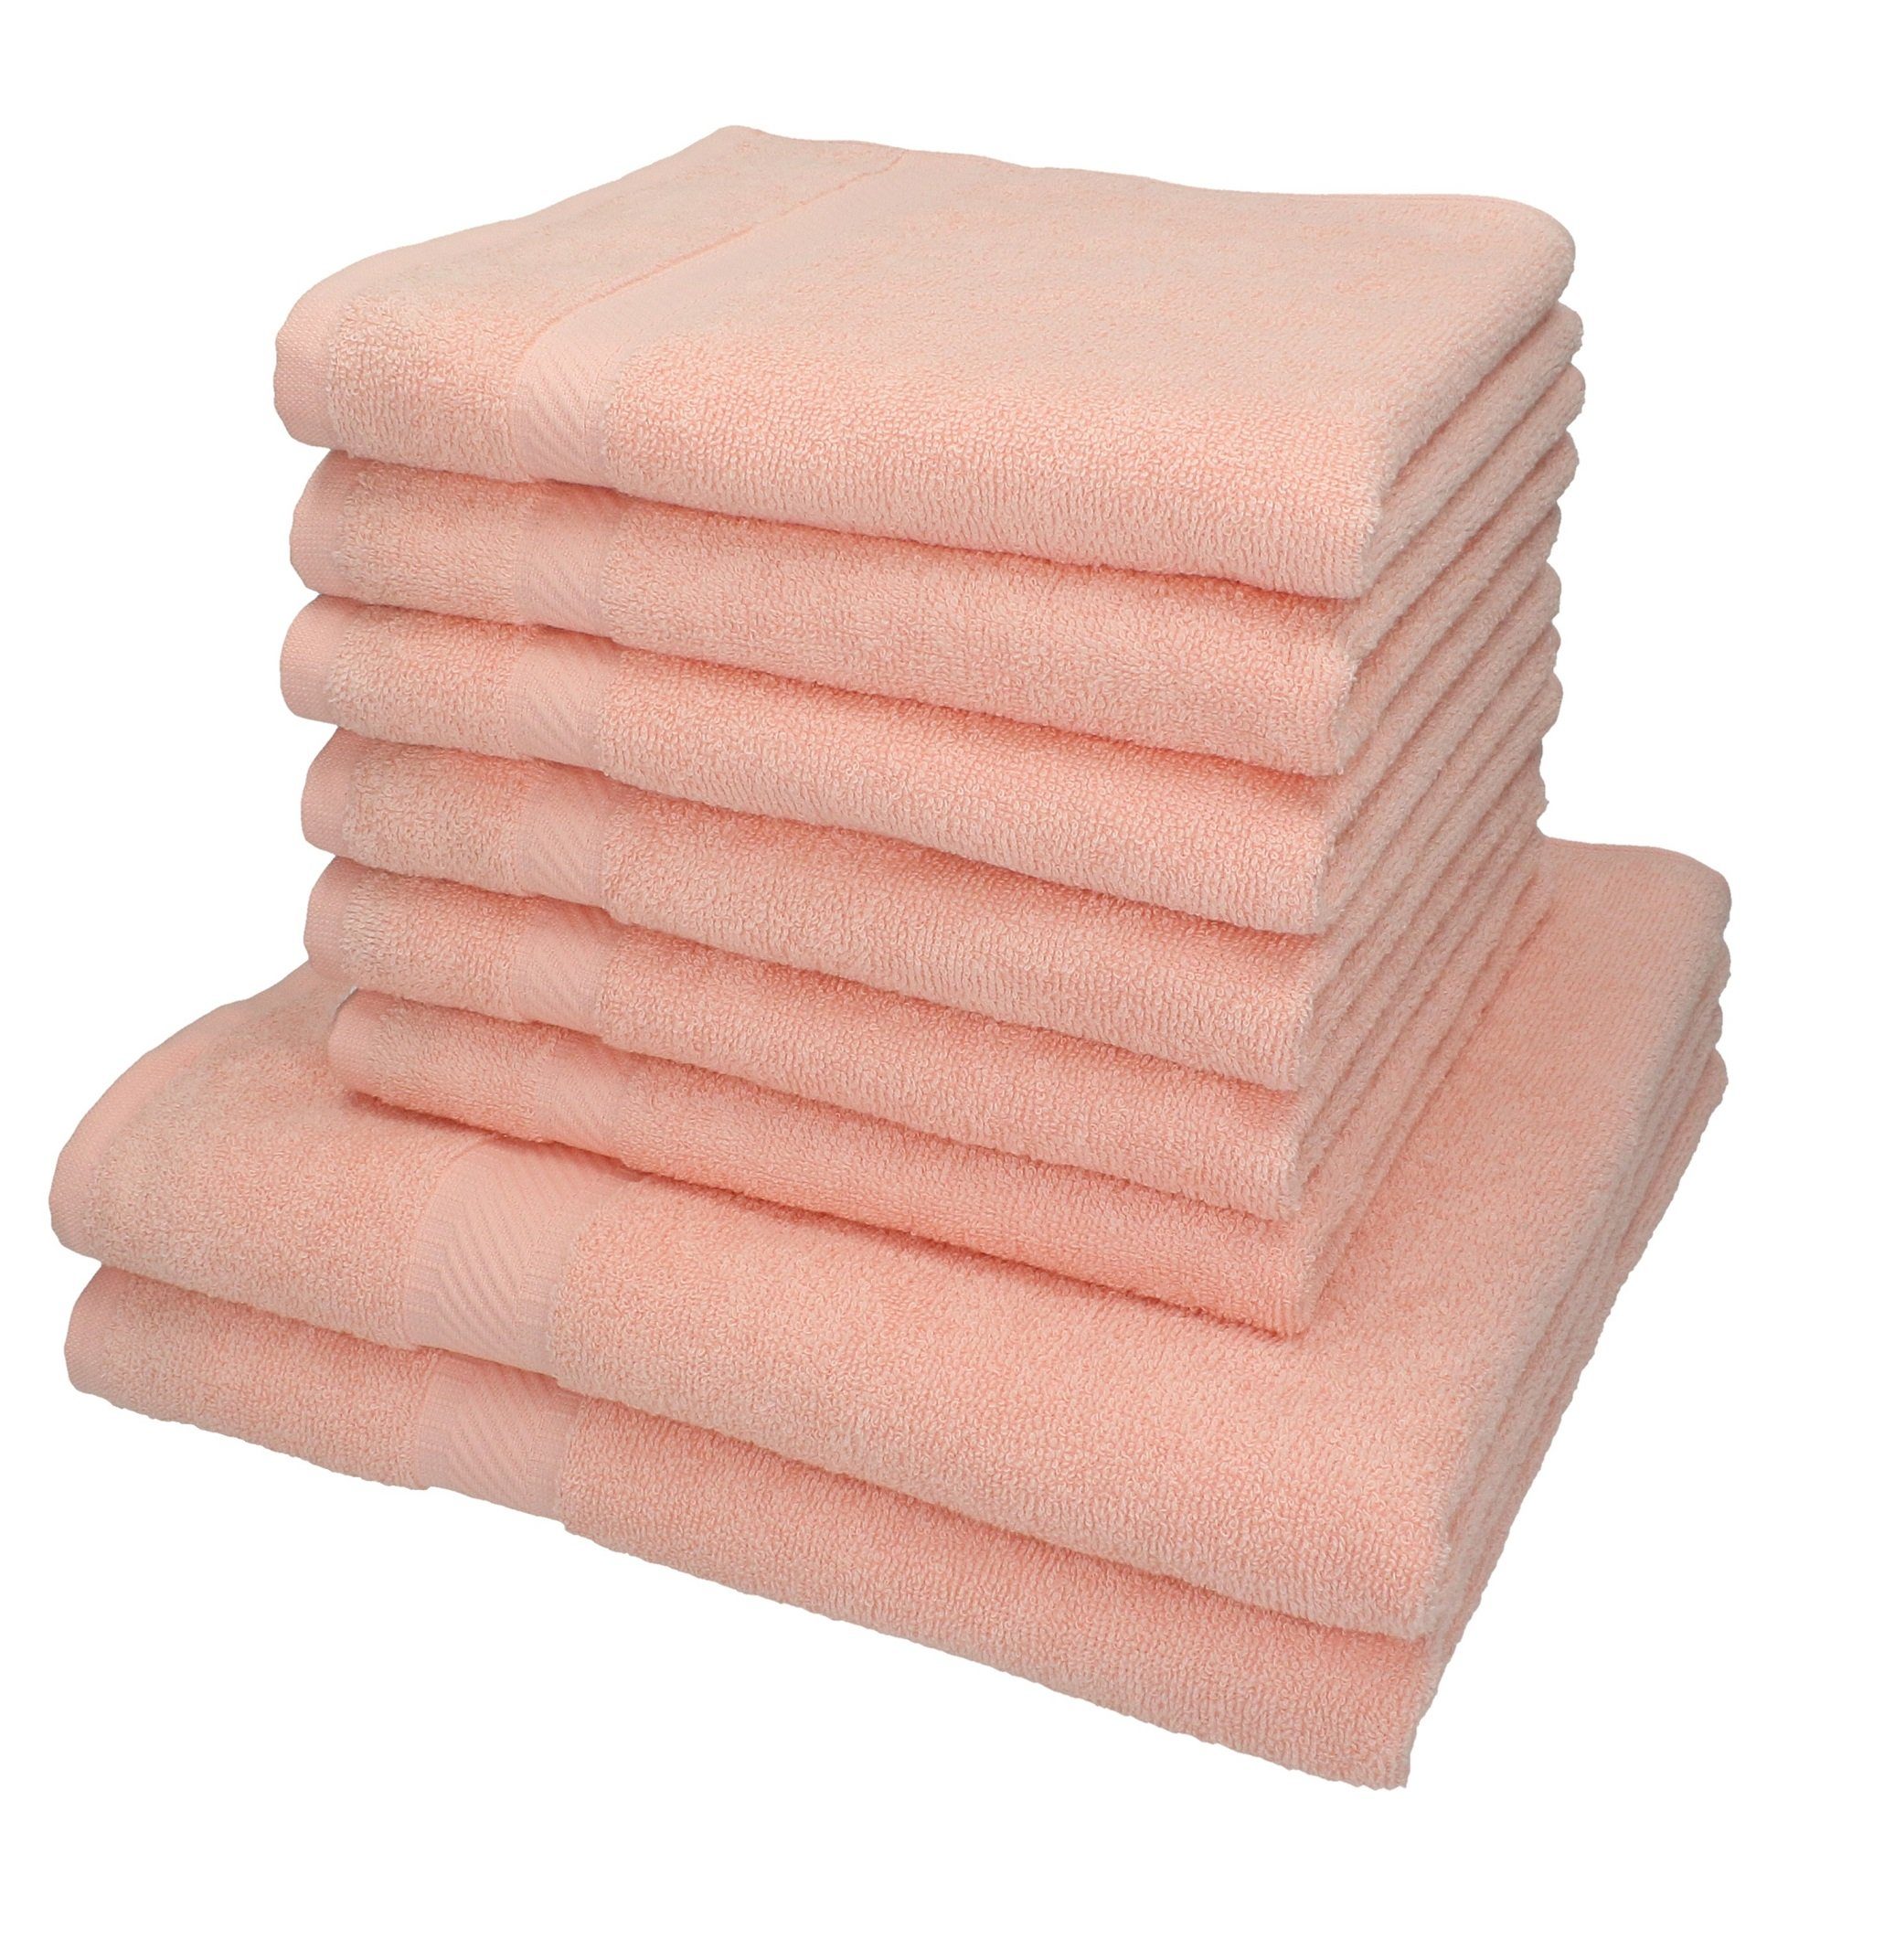 Betz Handtuch Set 8-TLG. Handtuch-Set Palermo Farbe apricot, 100% Baumwolle